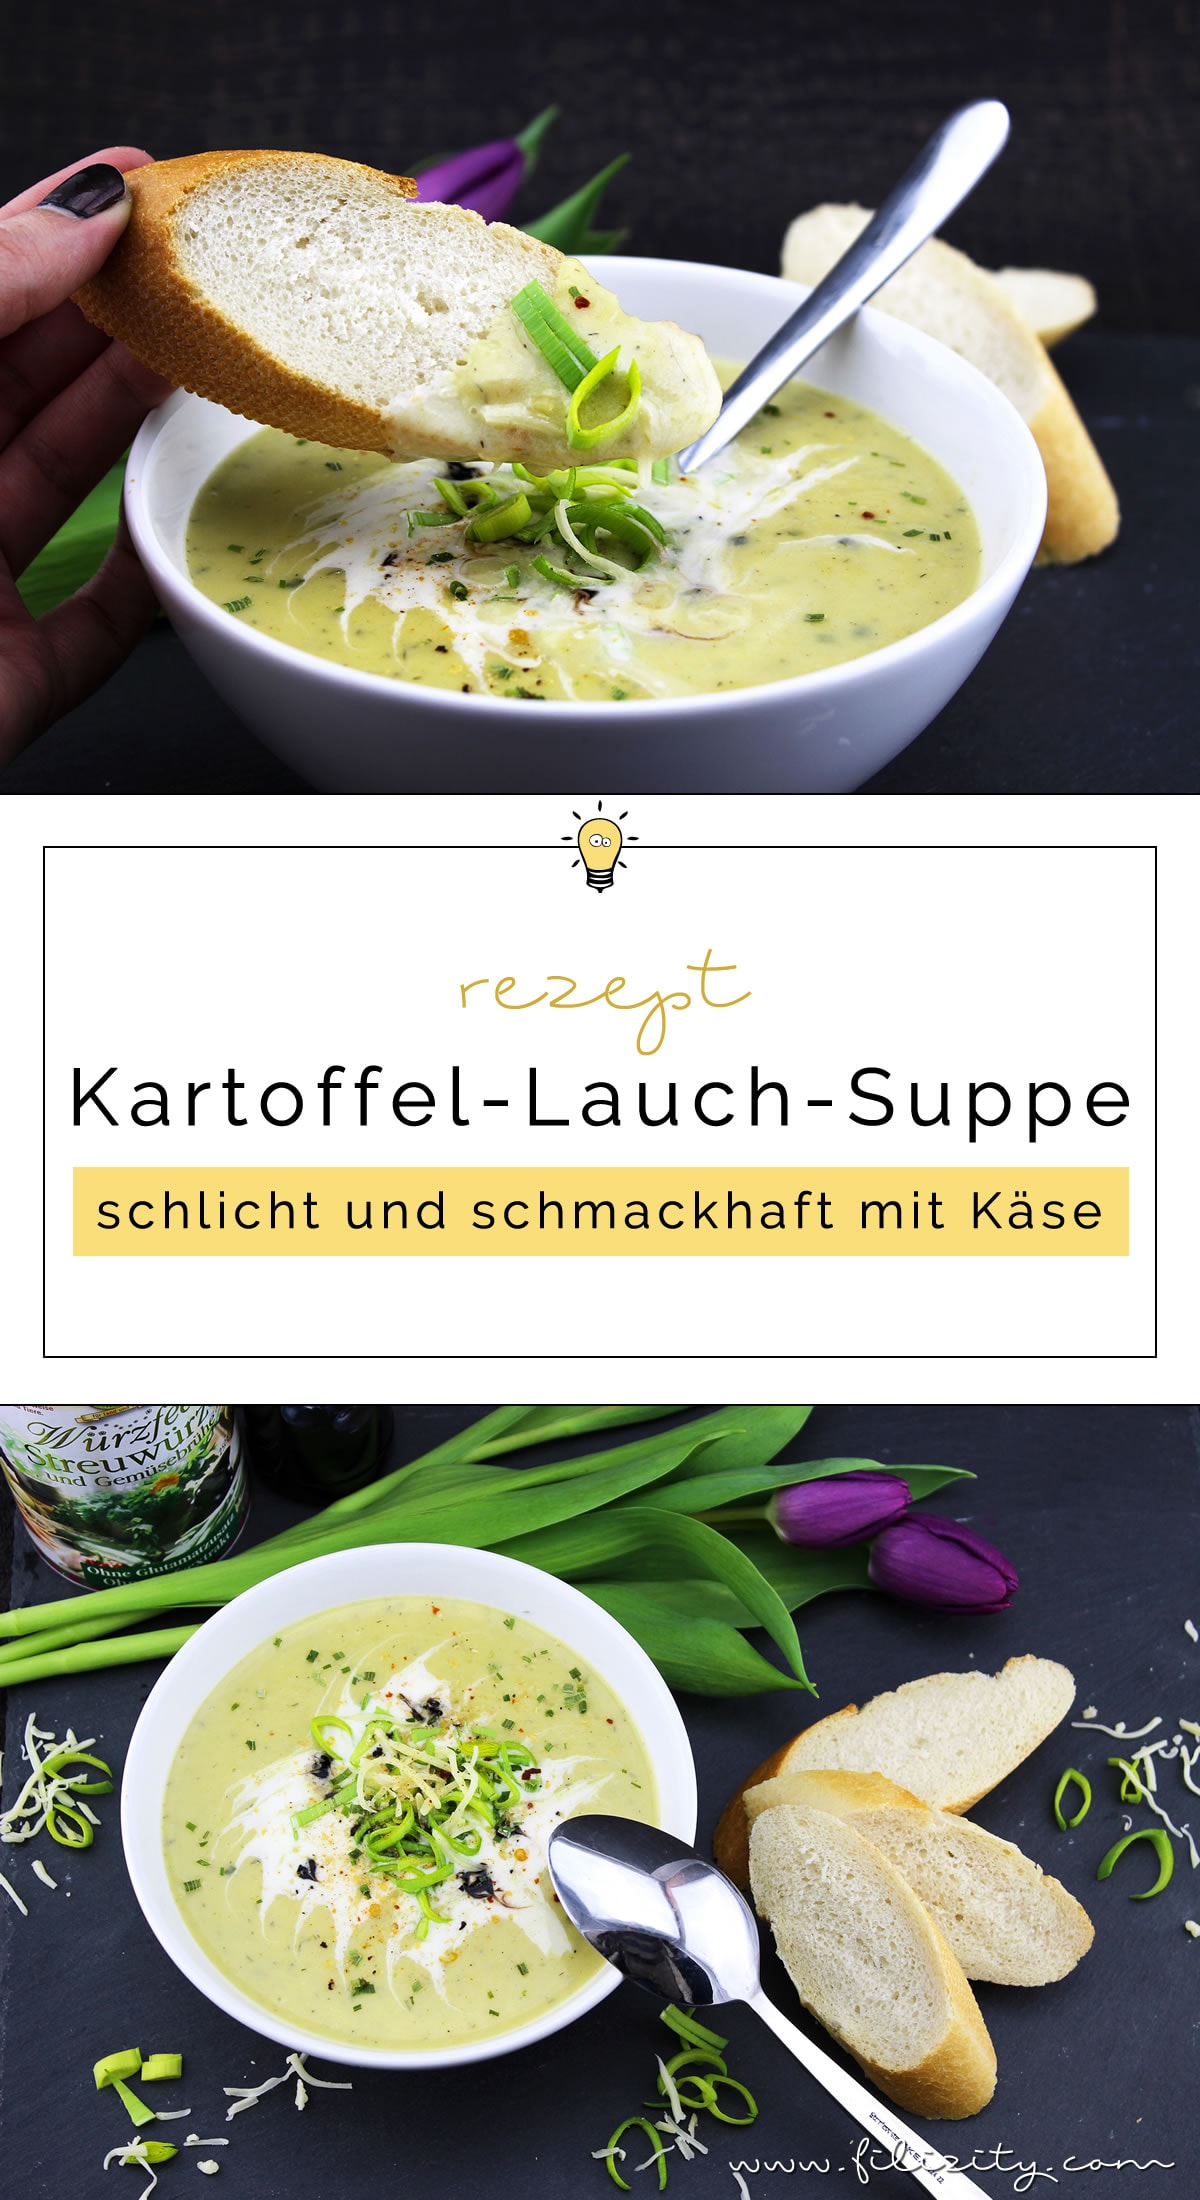 Herbst-Rezept: Kartoffel-Lauch-Suppe mit Käse und Kräutern | Filizity.com | Food-Blog aus Koblenz